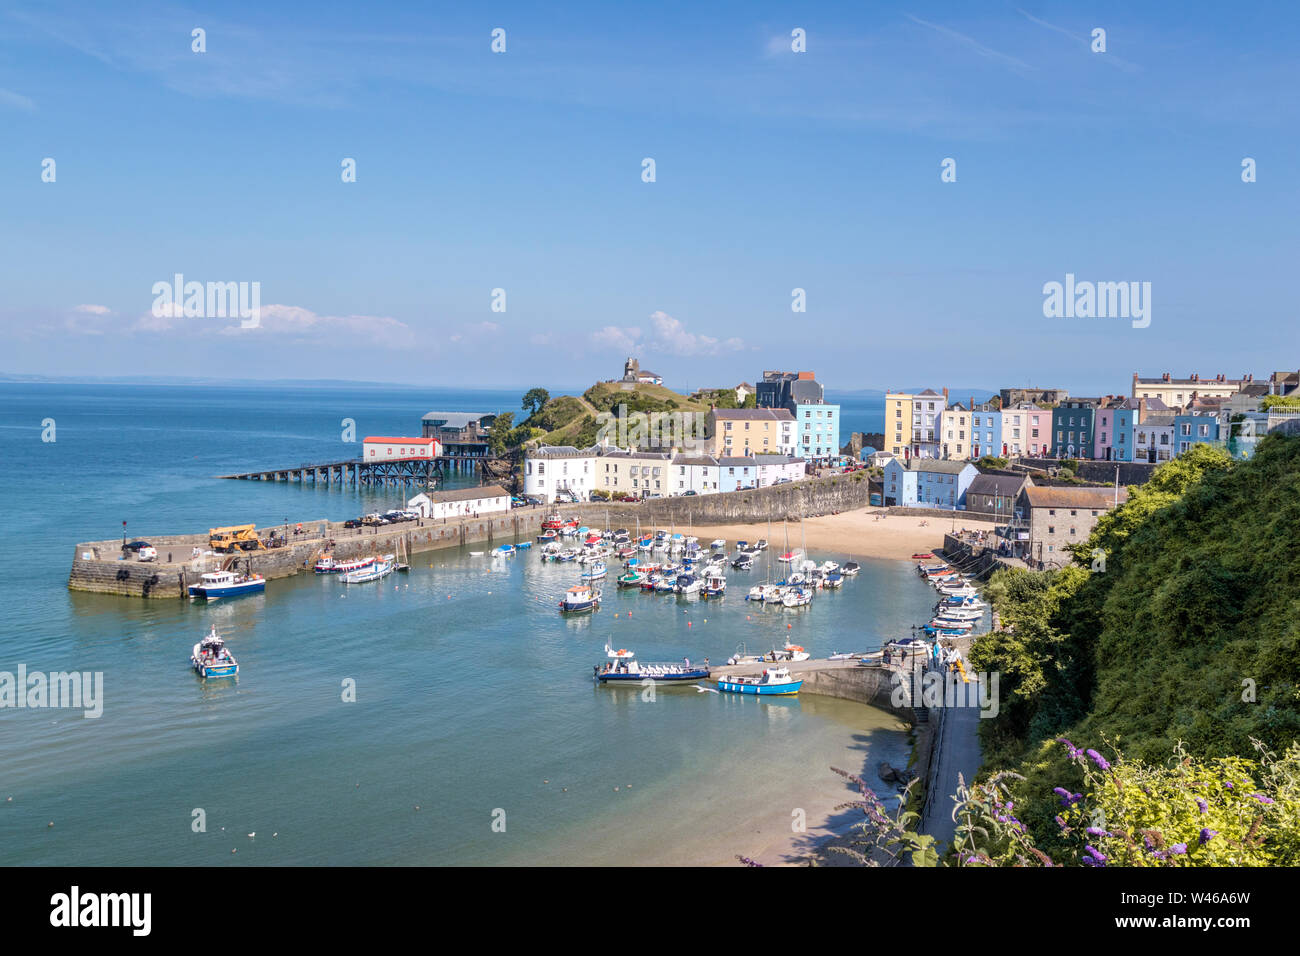 La ville côtière de Tenby, Pembrokeshire, Pays de Galles, Royaume-Uni Banque D'Images